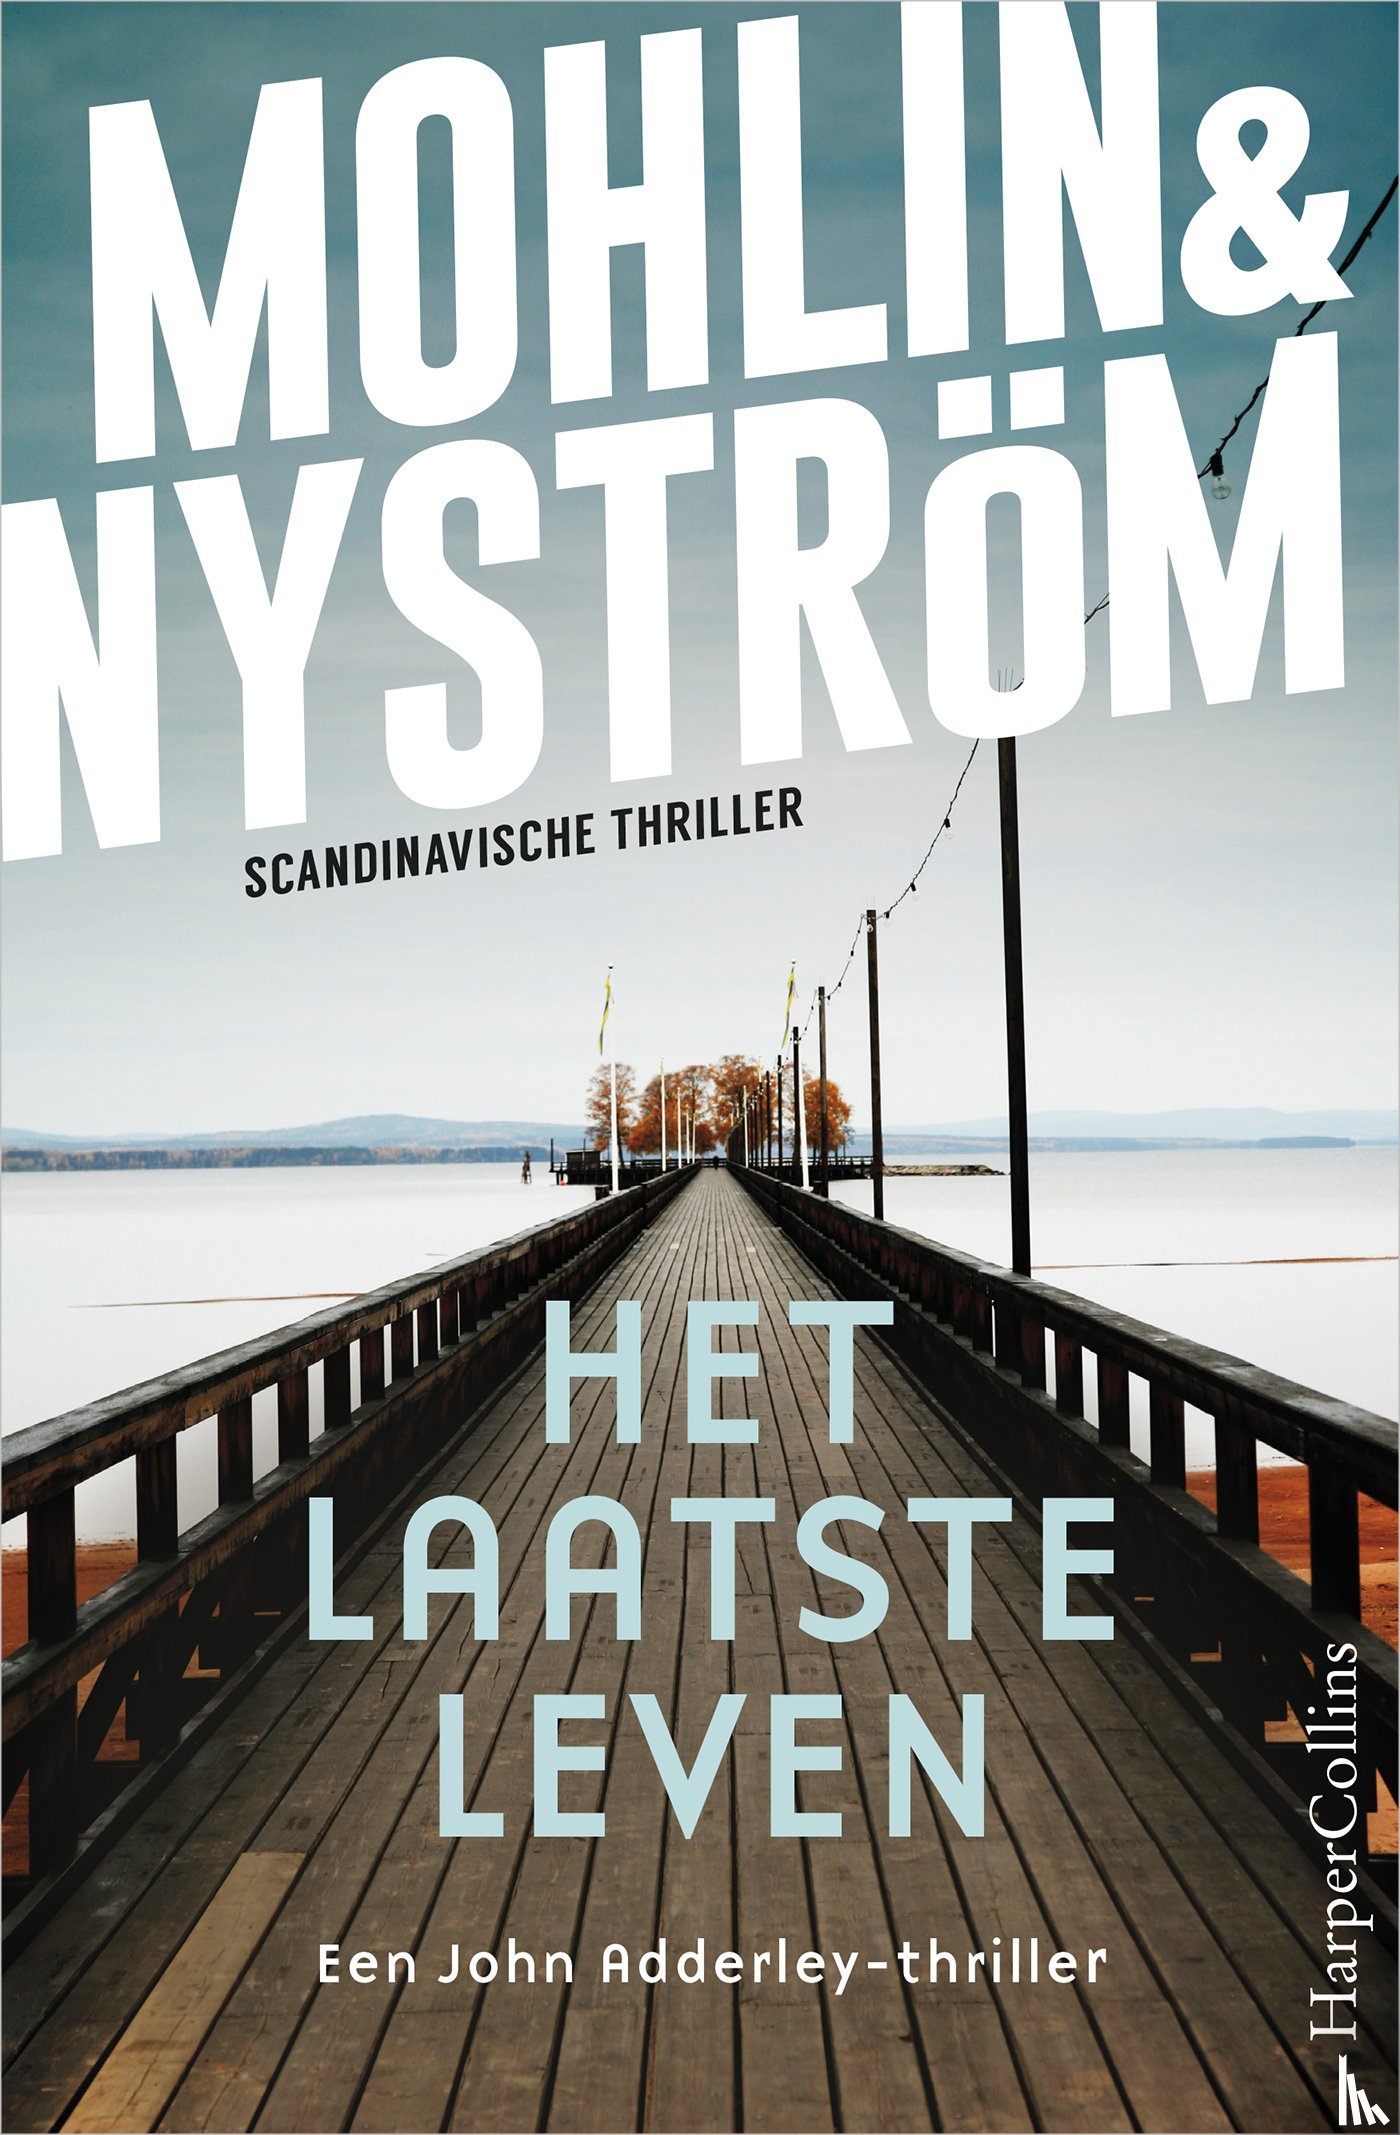 Mohlin, Peter, Nyström, Peter - Het laatste leven